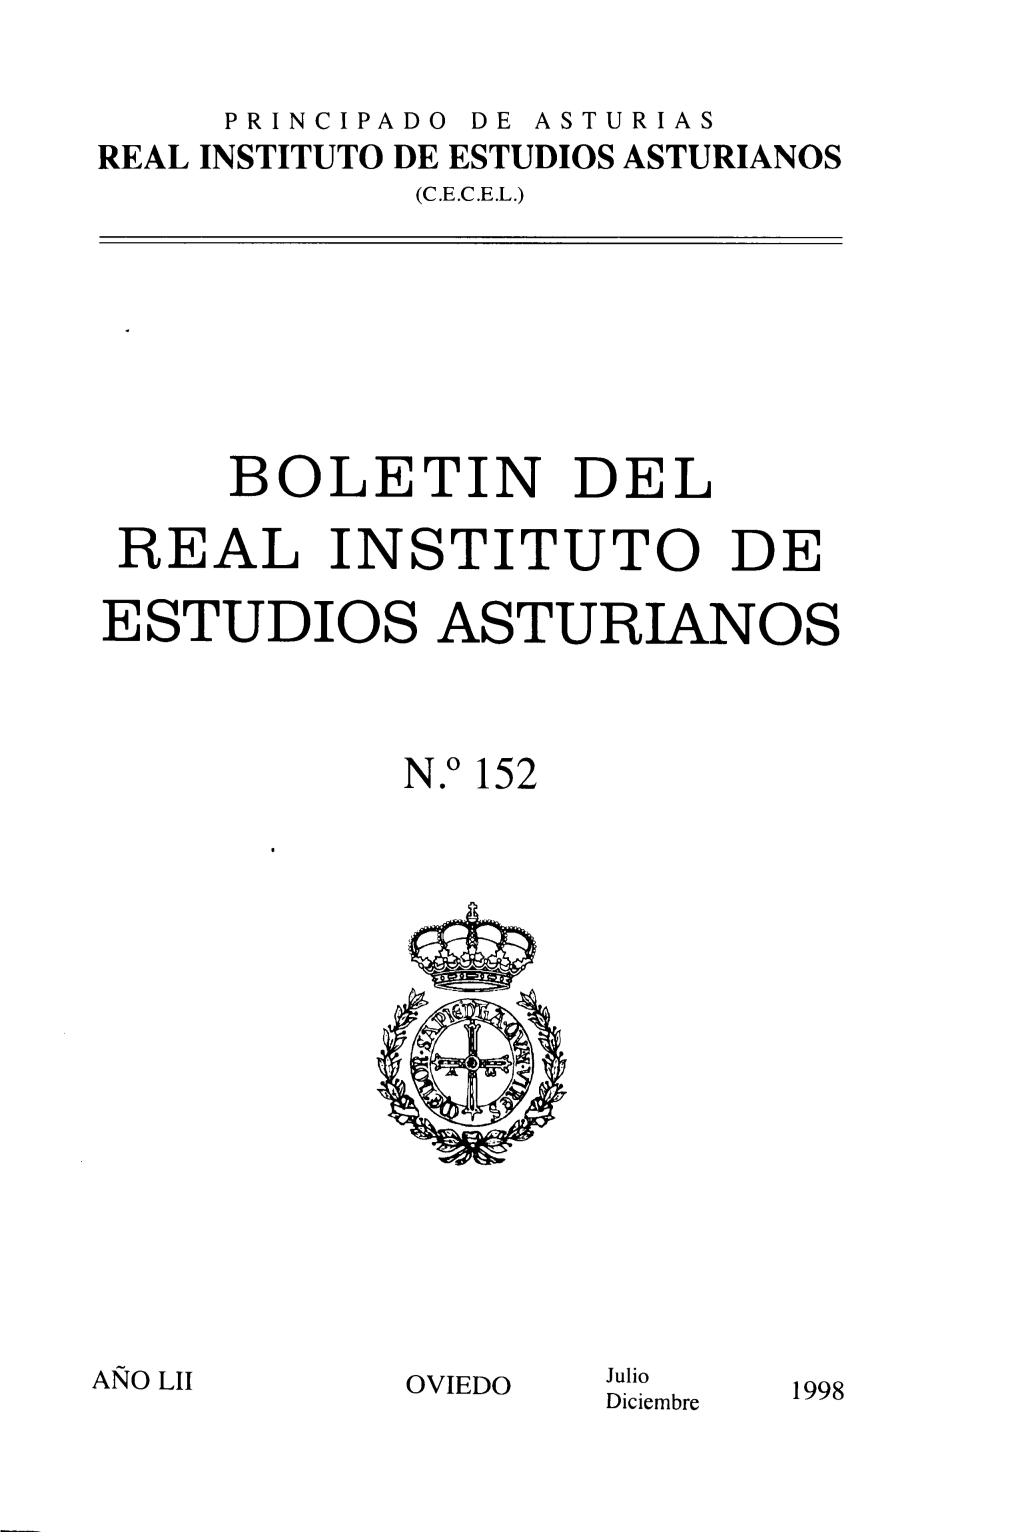 Boletin Del Real Instituto De Estudios Asturianos